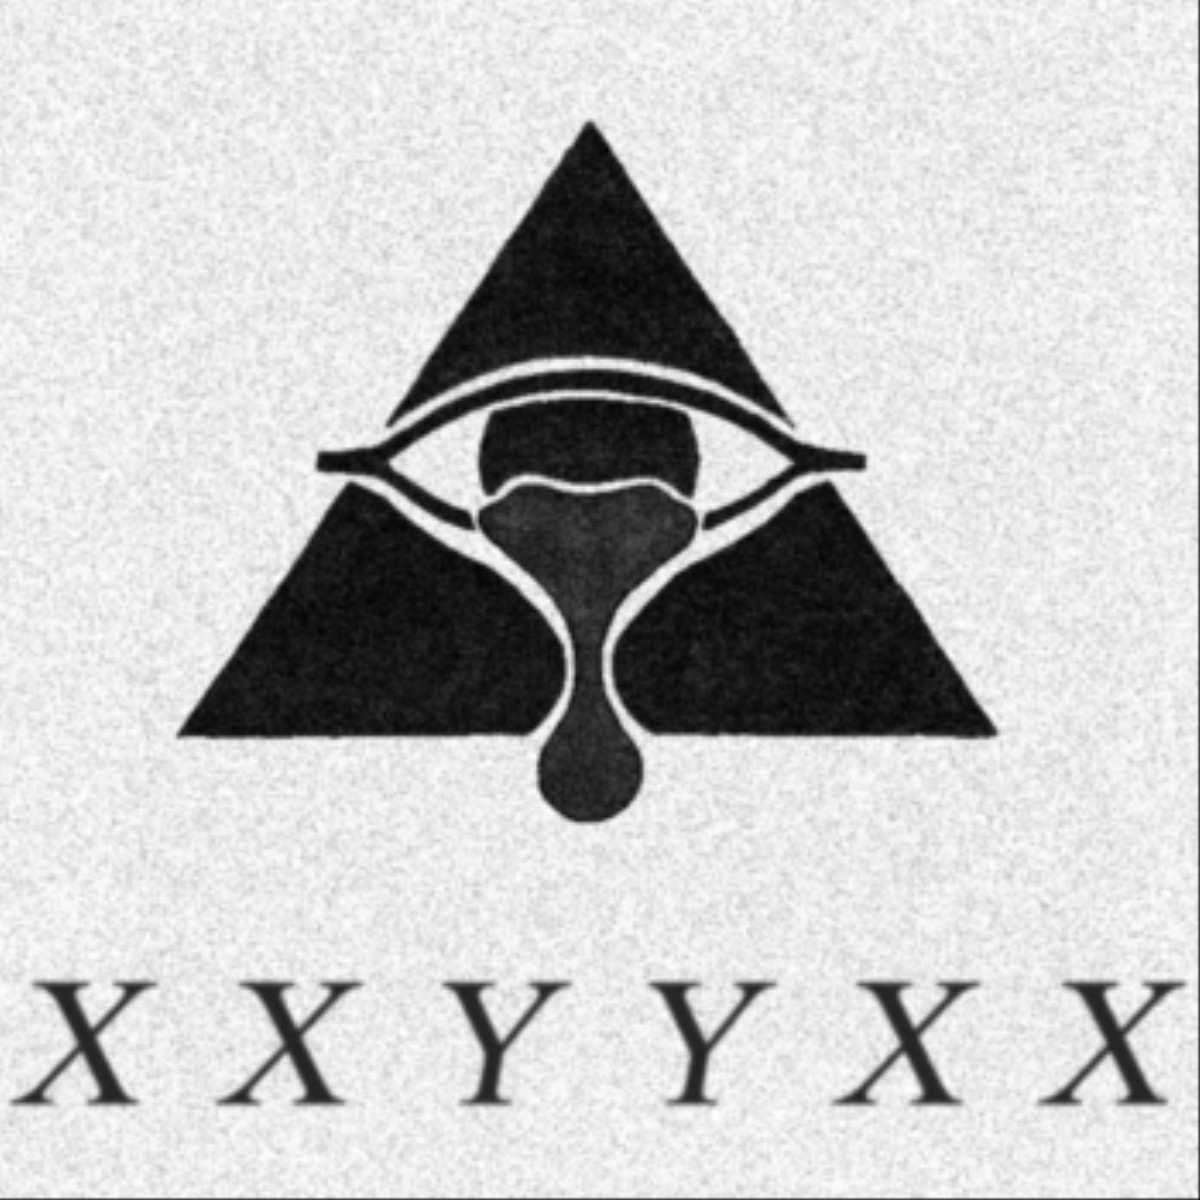 X X X Y Y Y X X X - XXYYXX Says He's Head Of The Illuminati